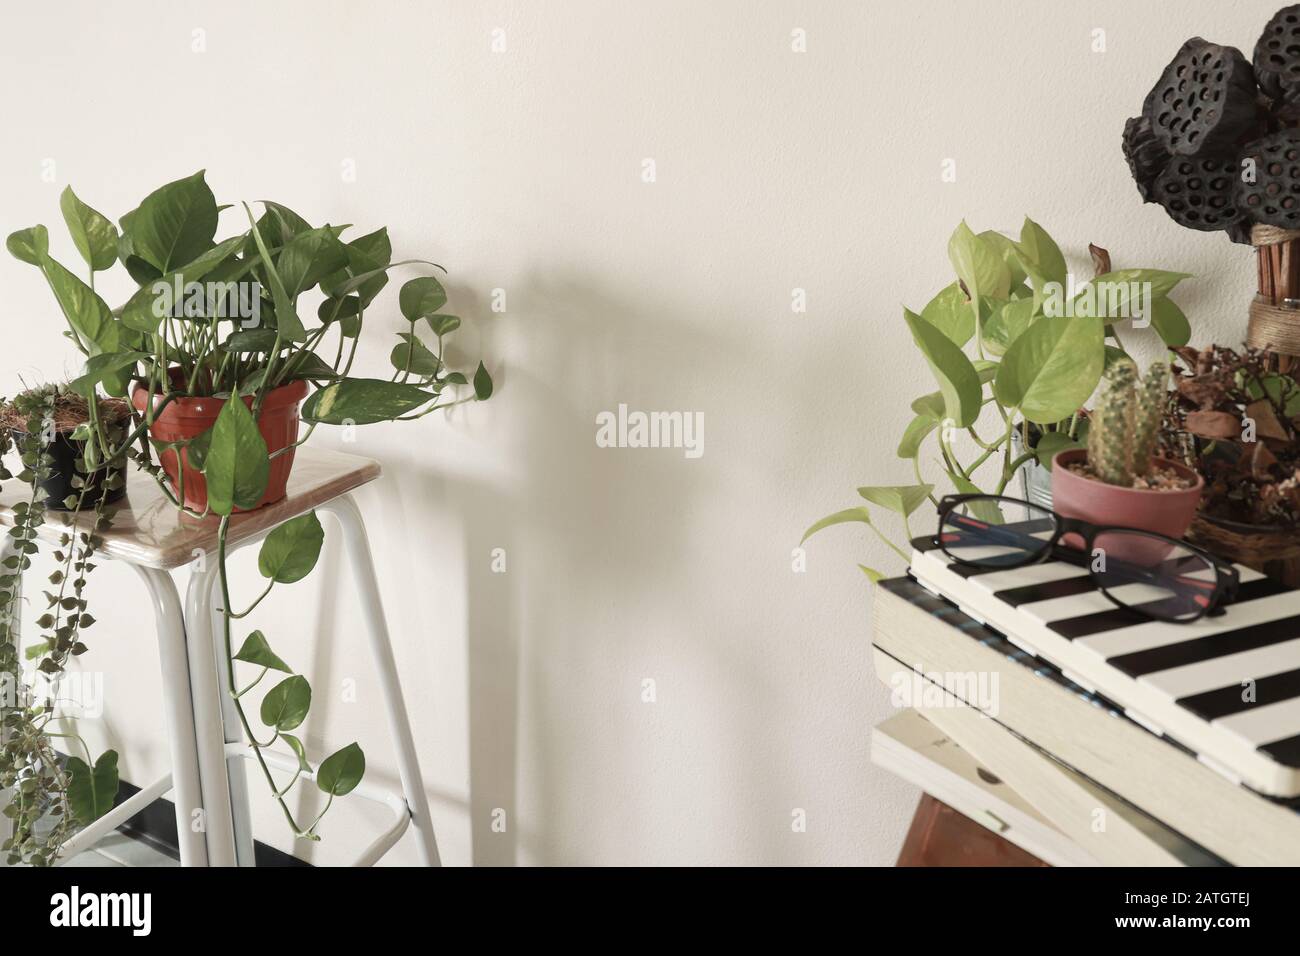 Primavera tempo ispirato decorazione casa utilizzando le piante domestiche per creare un sesso neutrale e rilassante spazio domestico Foto Stock